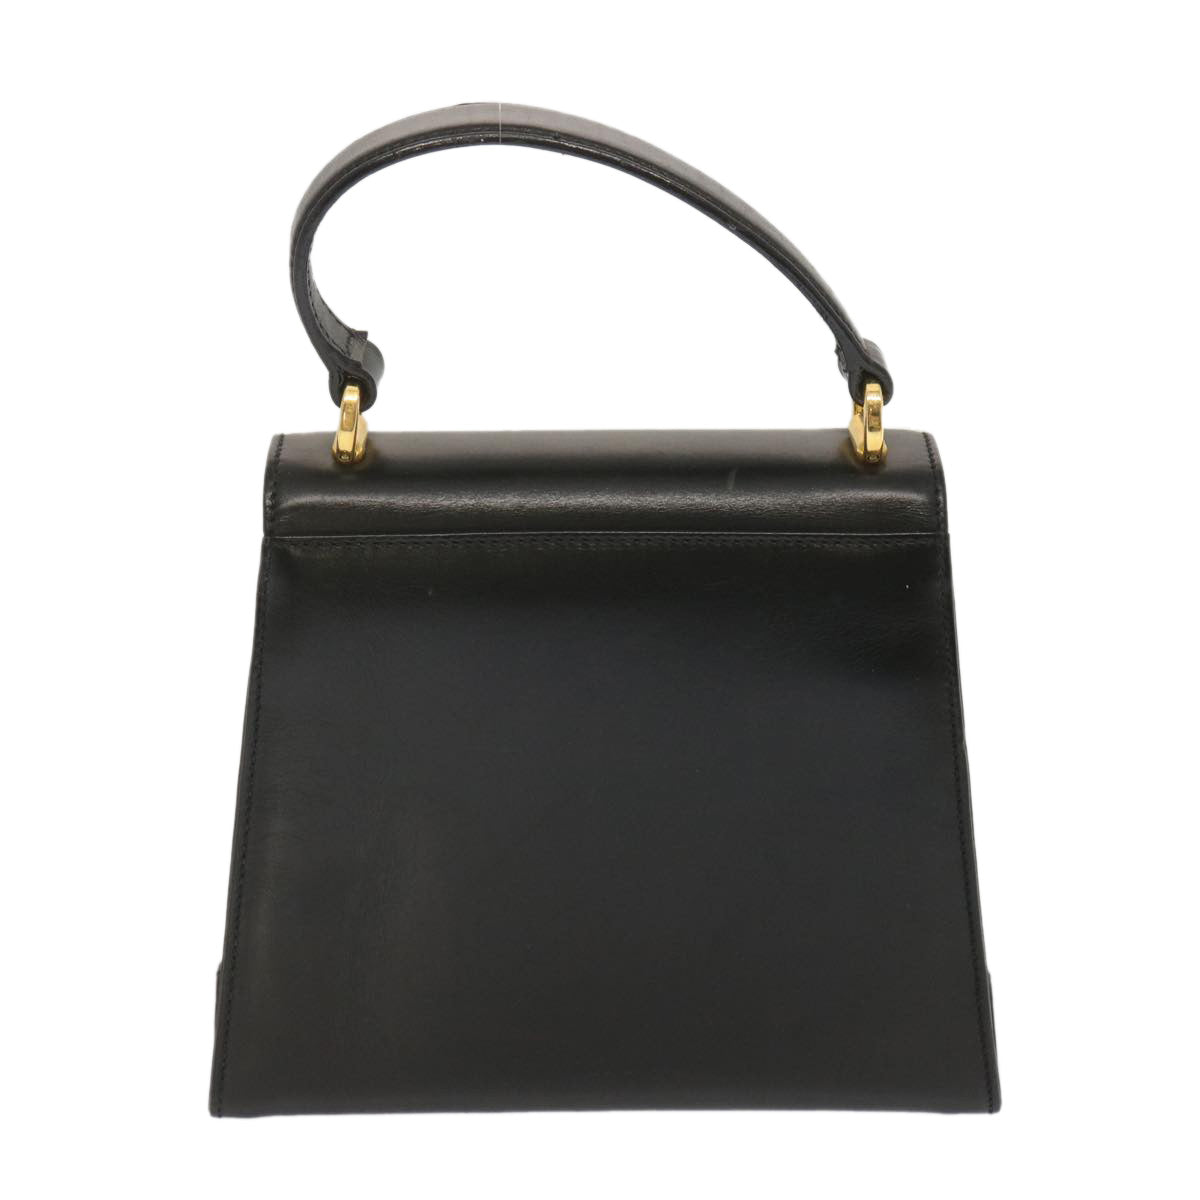 Salvatore Ferragamo Hand Bag Leather Black Auth 68010 - 0